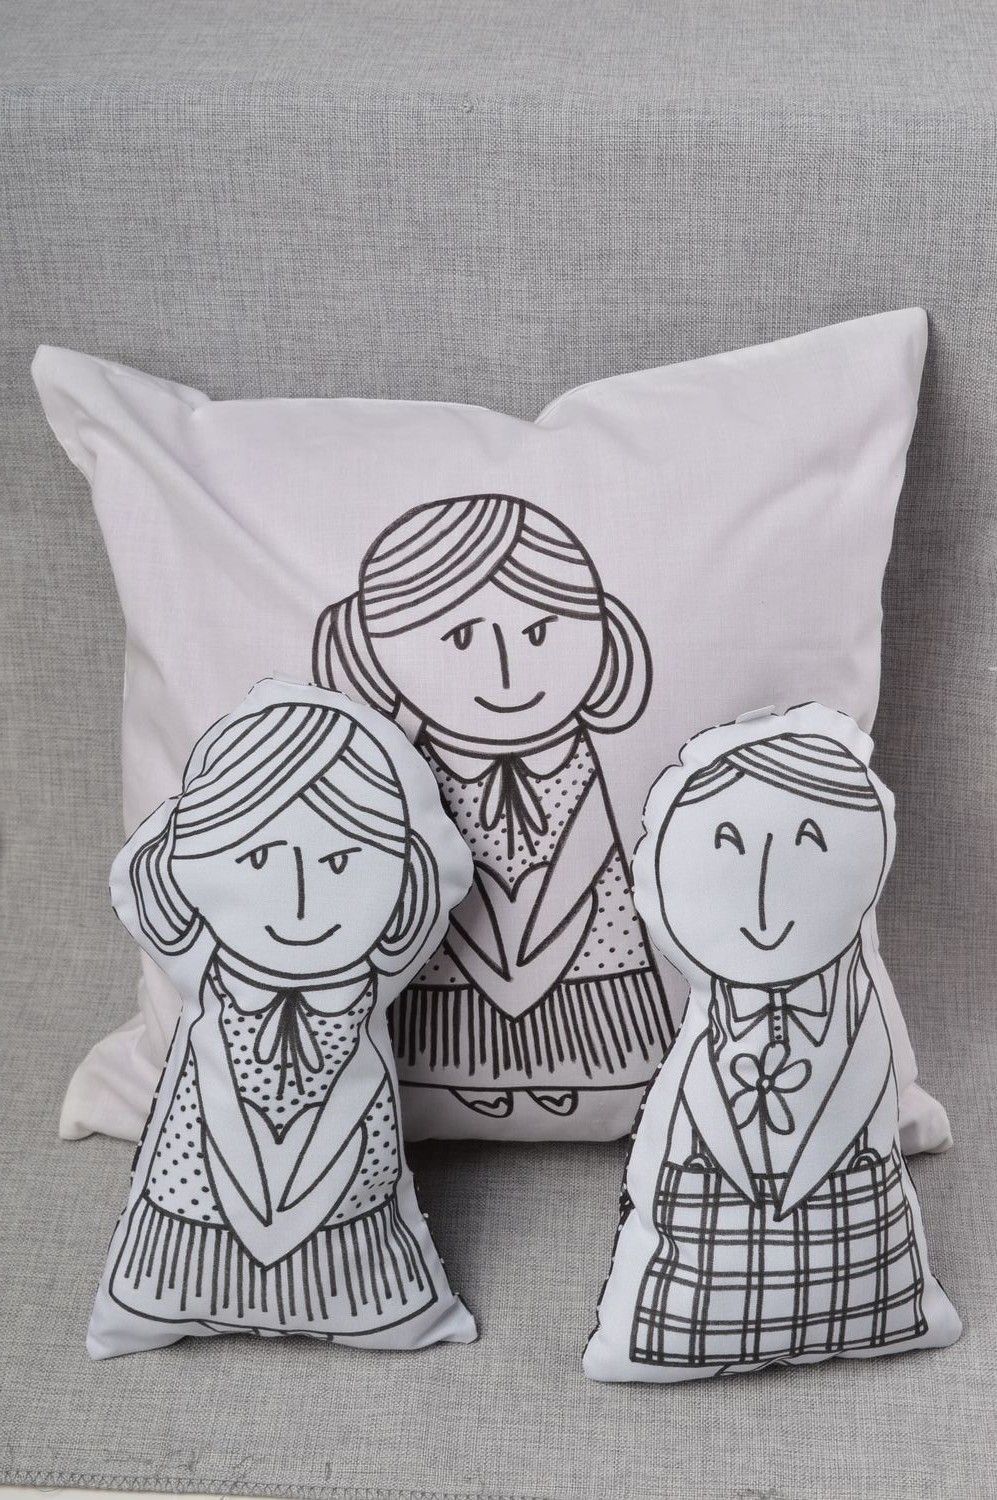 Handmade decorative bed linen accent pillow handmade cushion pillow case 3 items photo 1